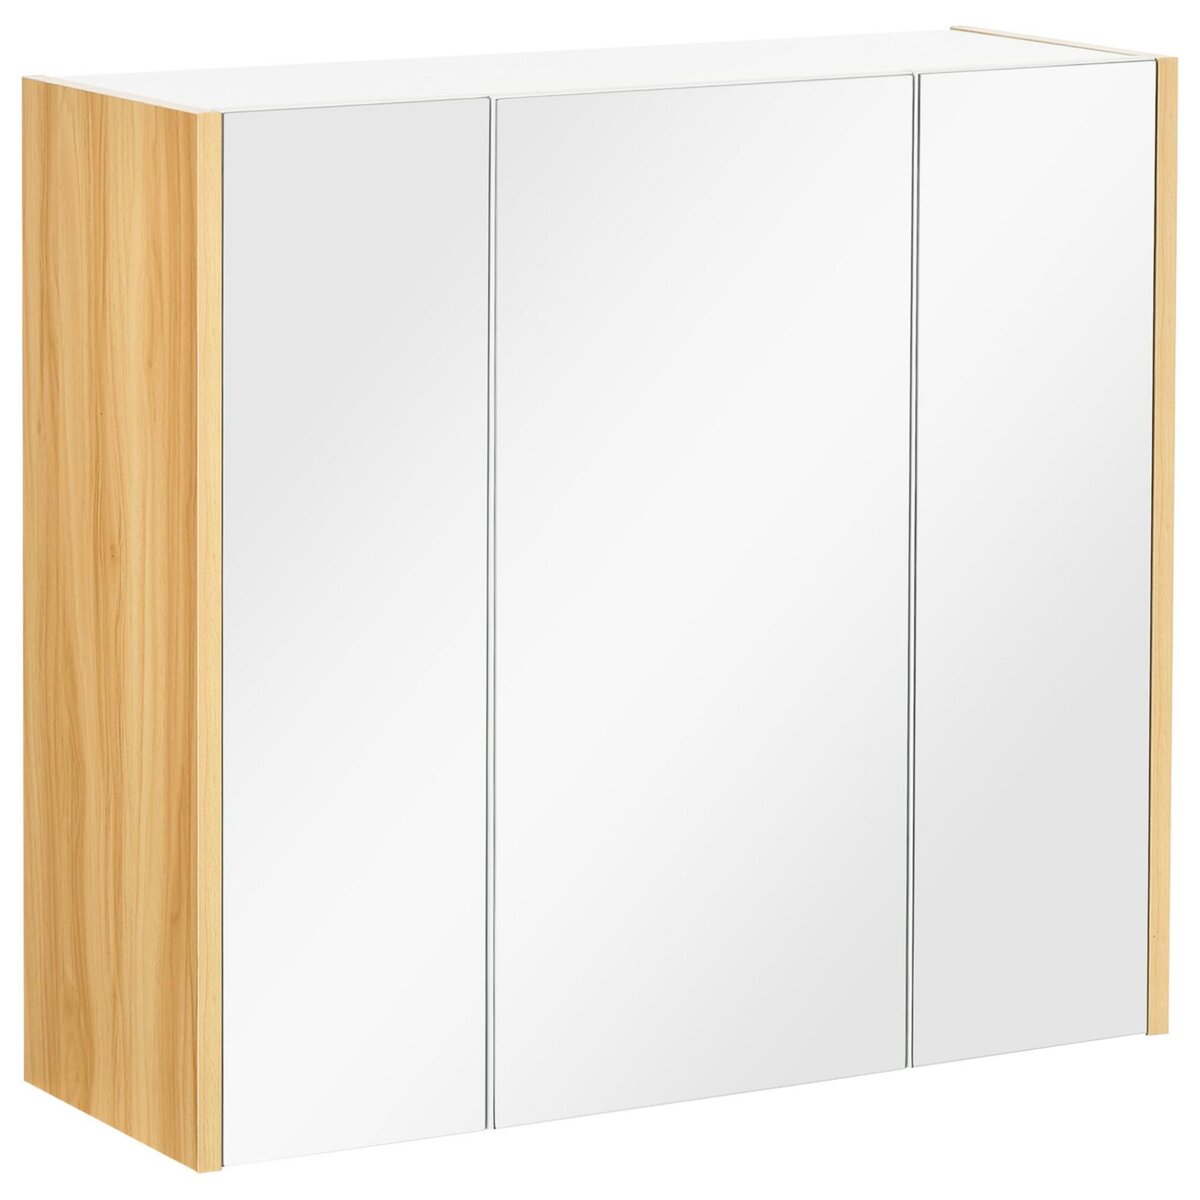 KLEANKIN Armoire miroir salle de bain 3 portes 4 étagères aspect bois clair blanc